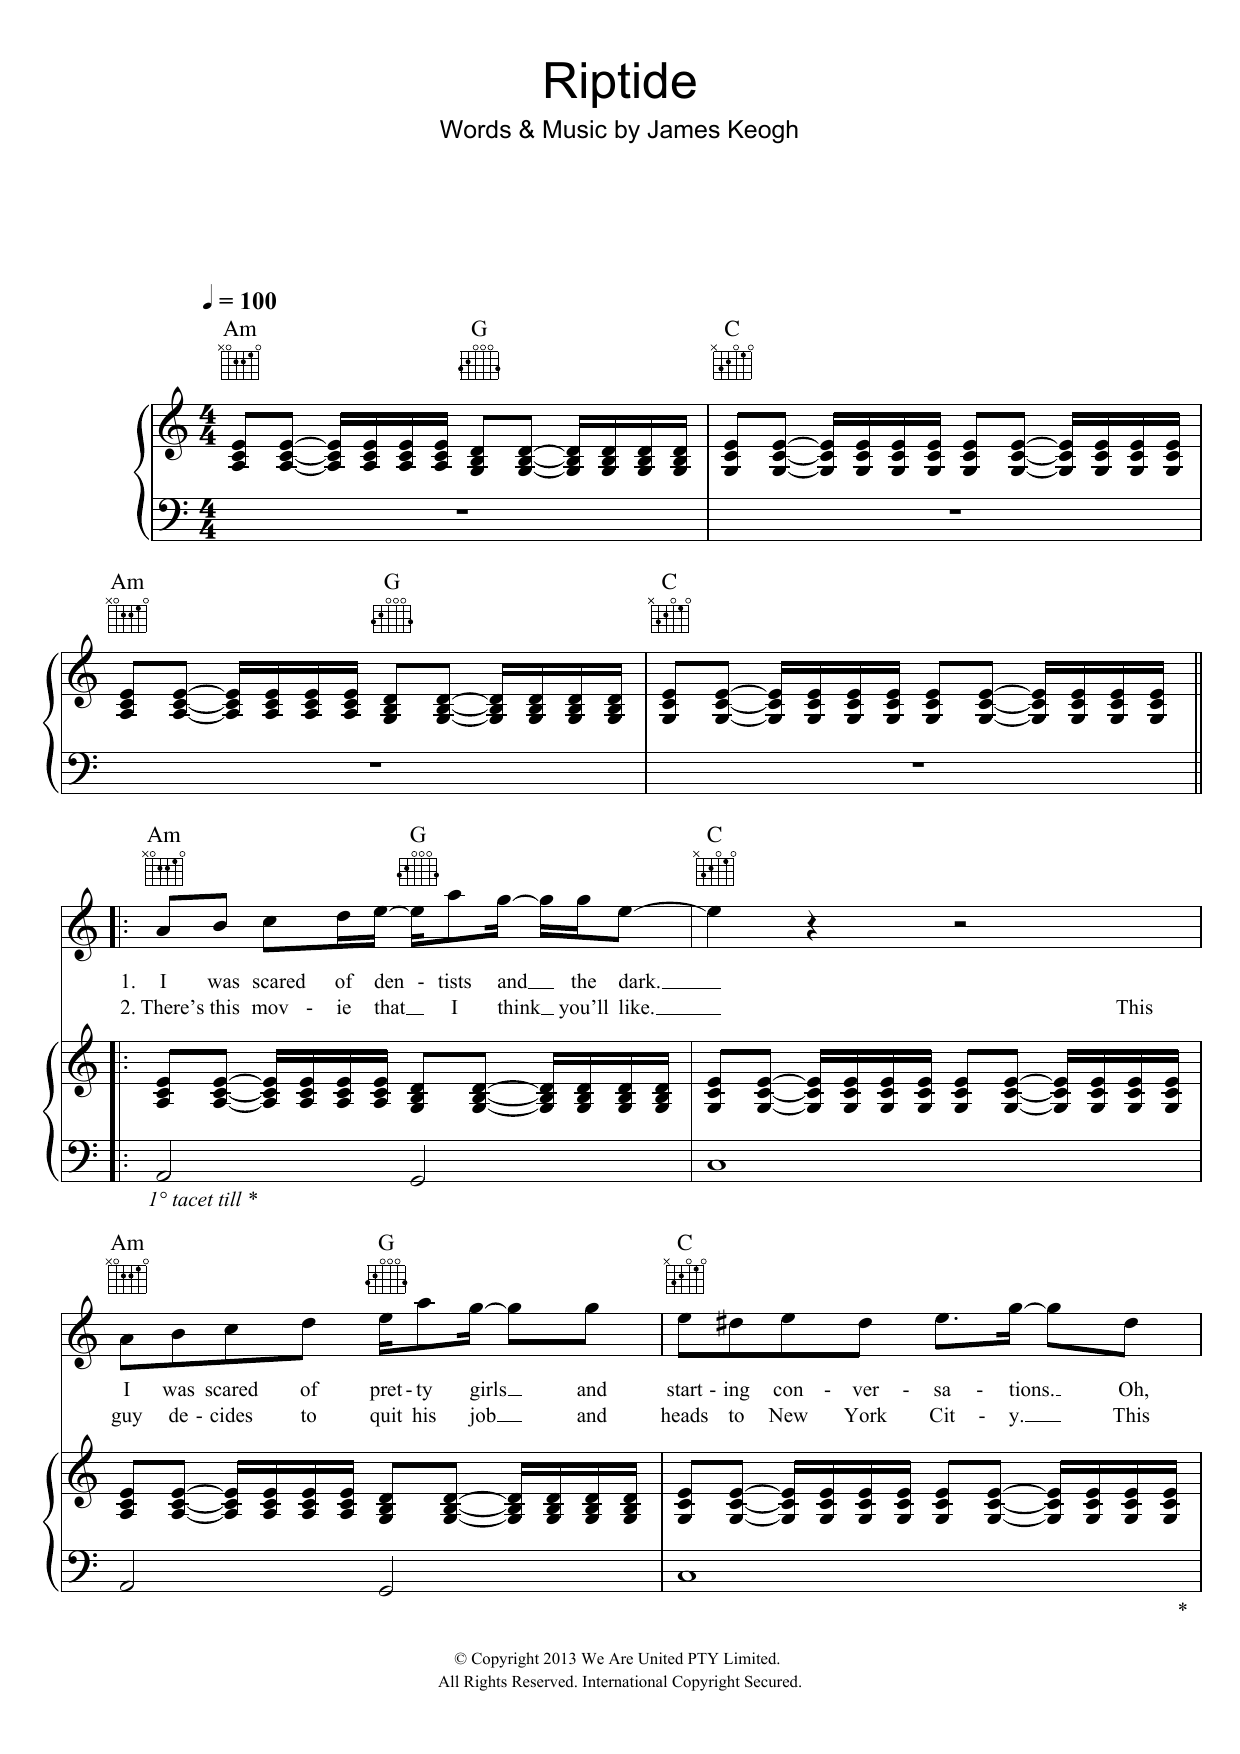 Vance Joy Riptide Sheet Music Notes & Chords for Ukulele - Download or Print PDF